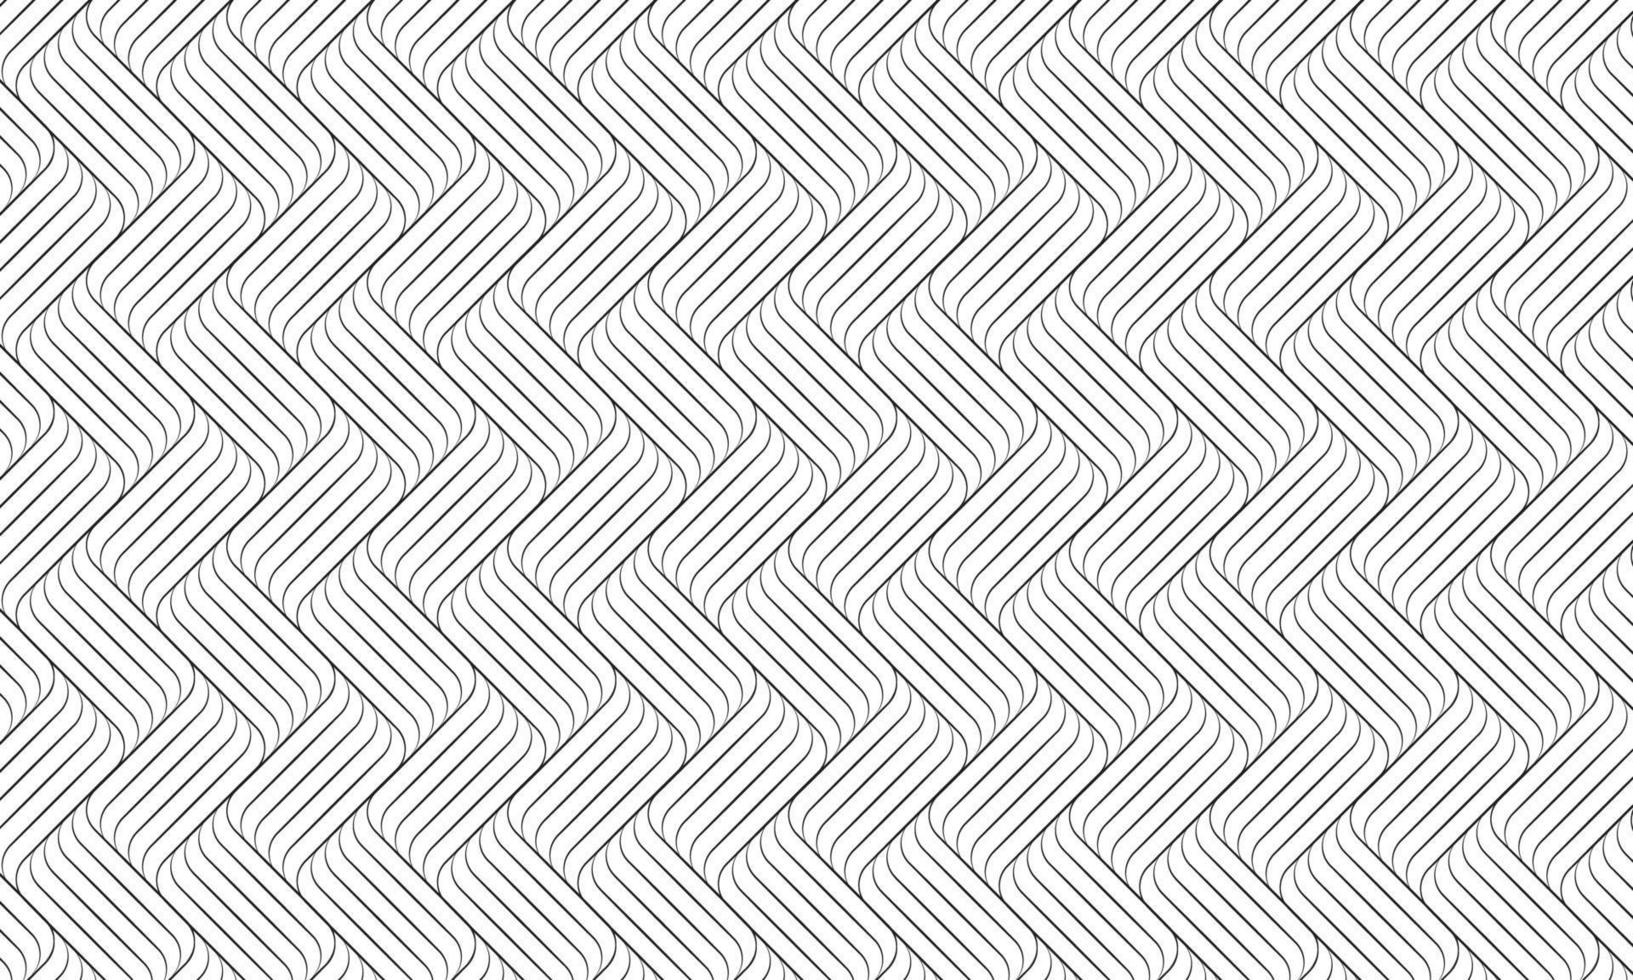 lineair golvenpatroon op witte achtergrond, abstracte zwarte lijnstrepen vector